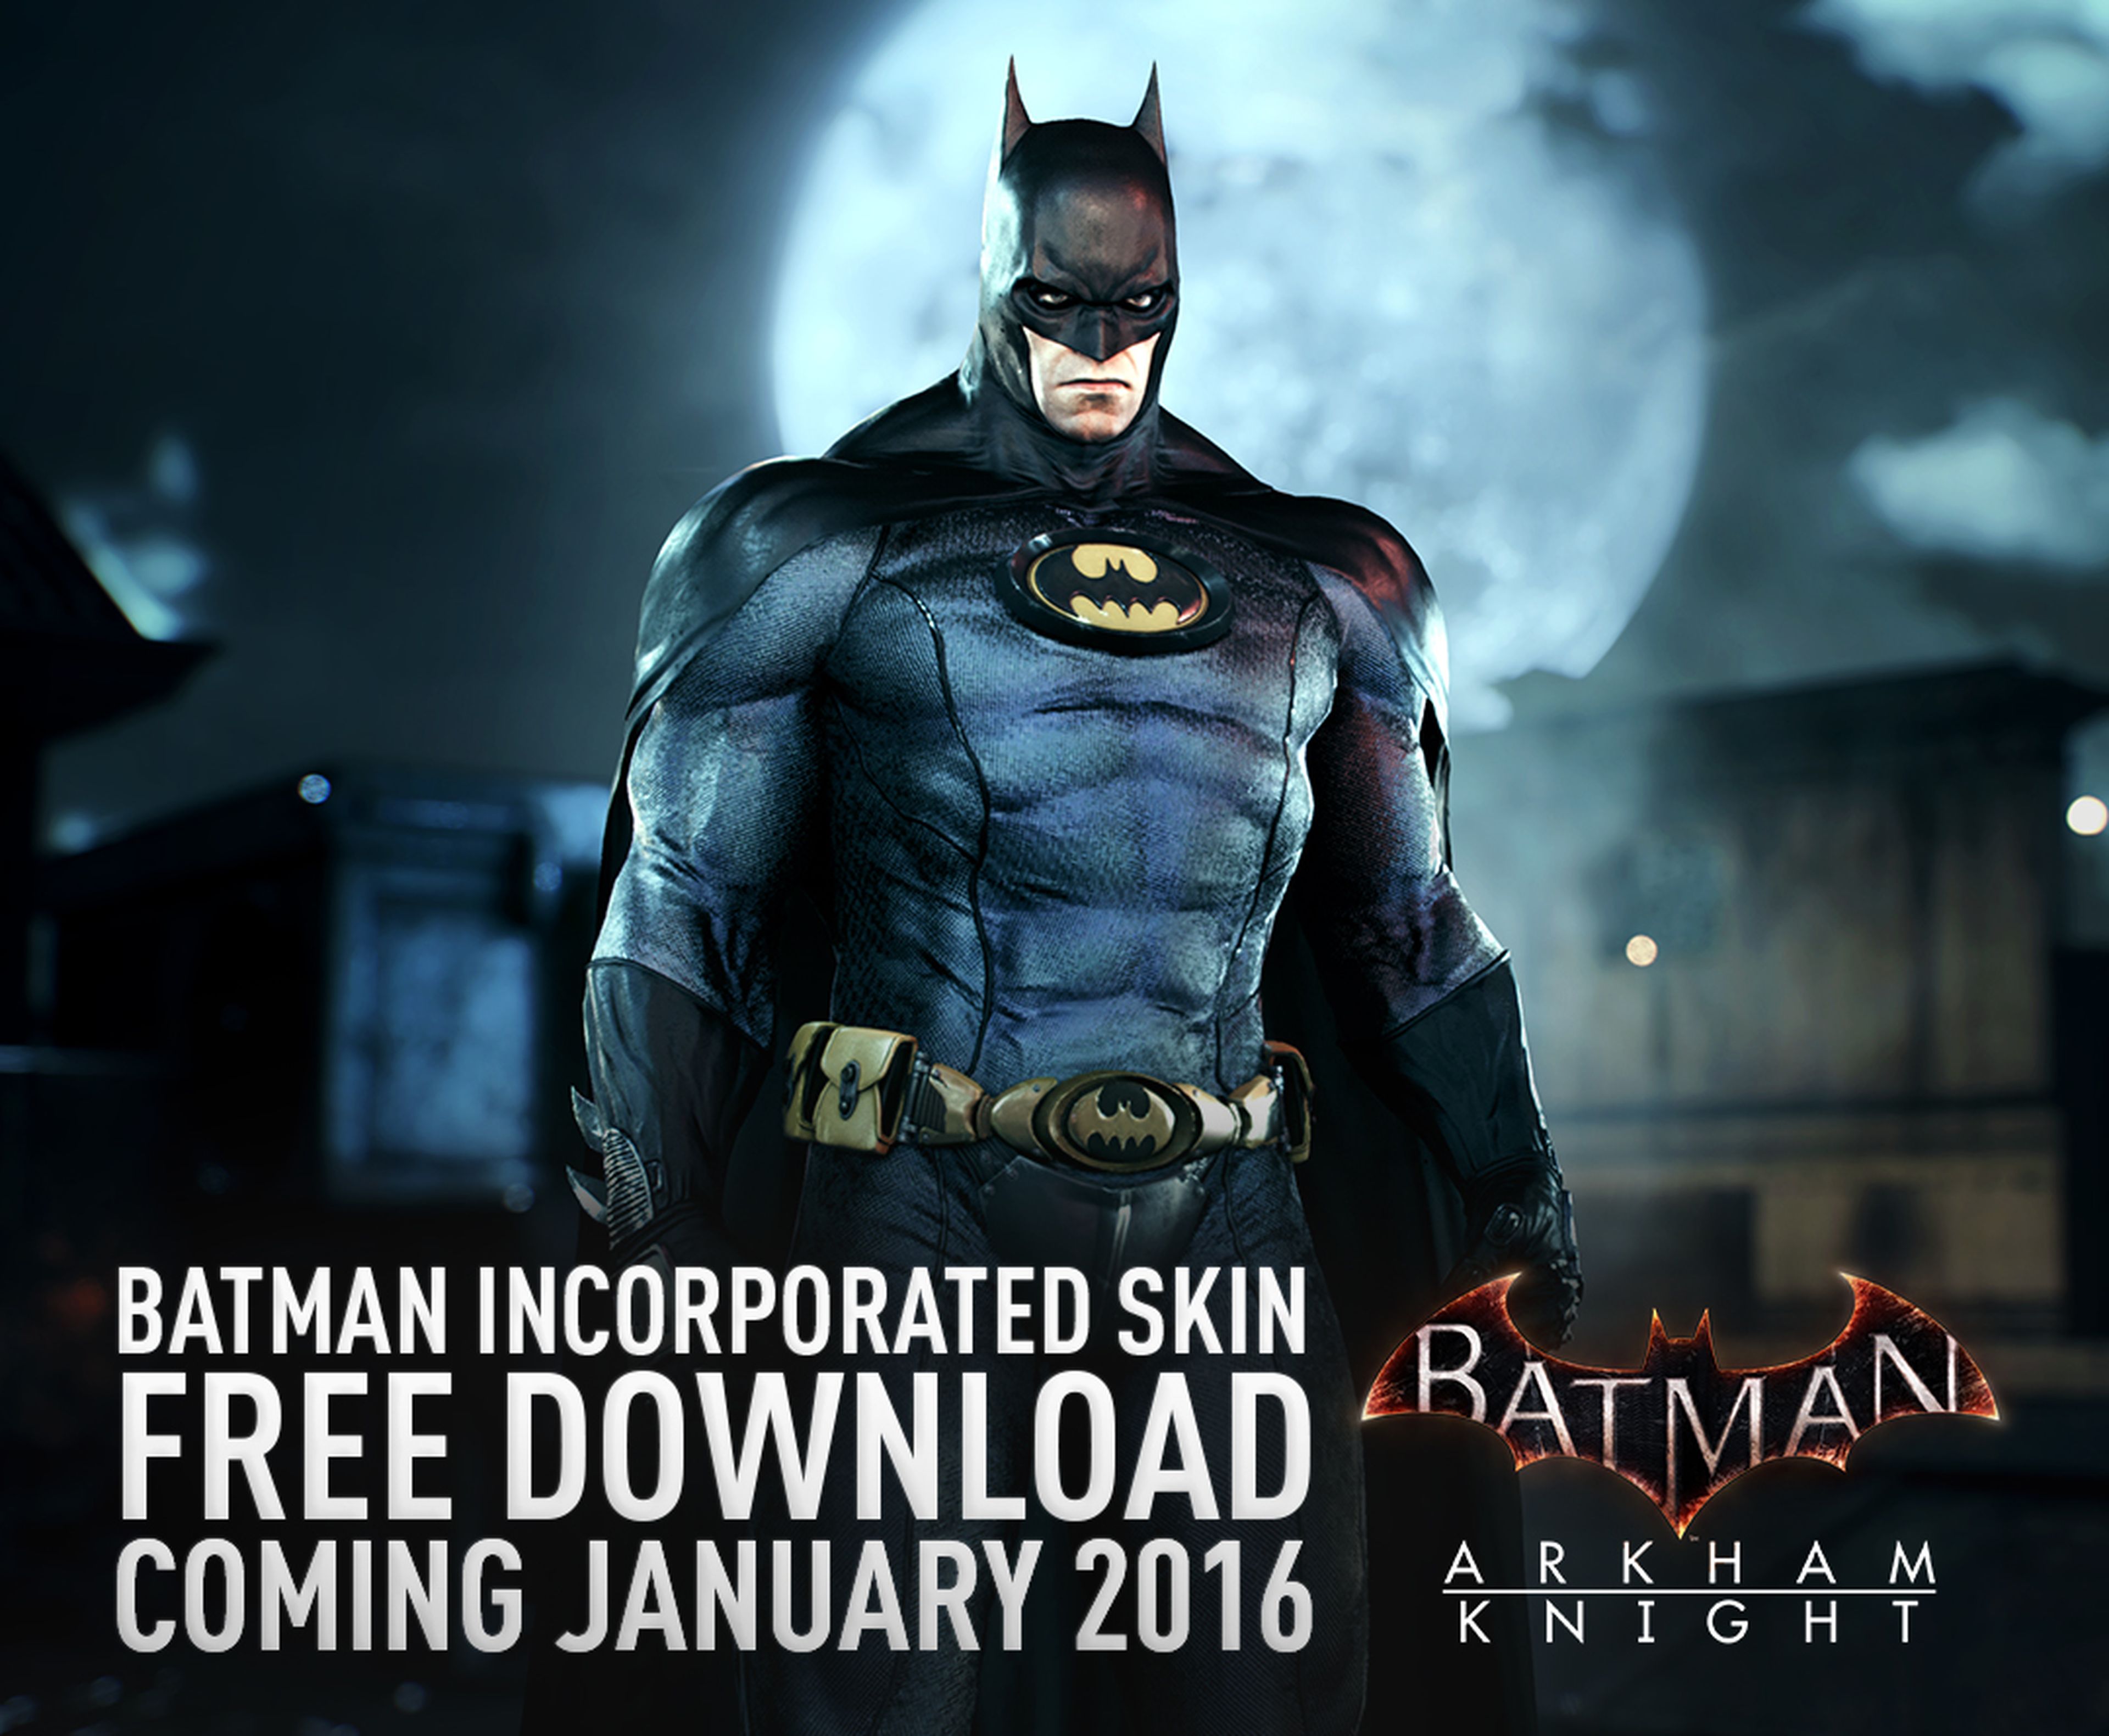 Batman Arkham Knight recibirá nuevos contenidos